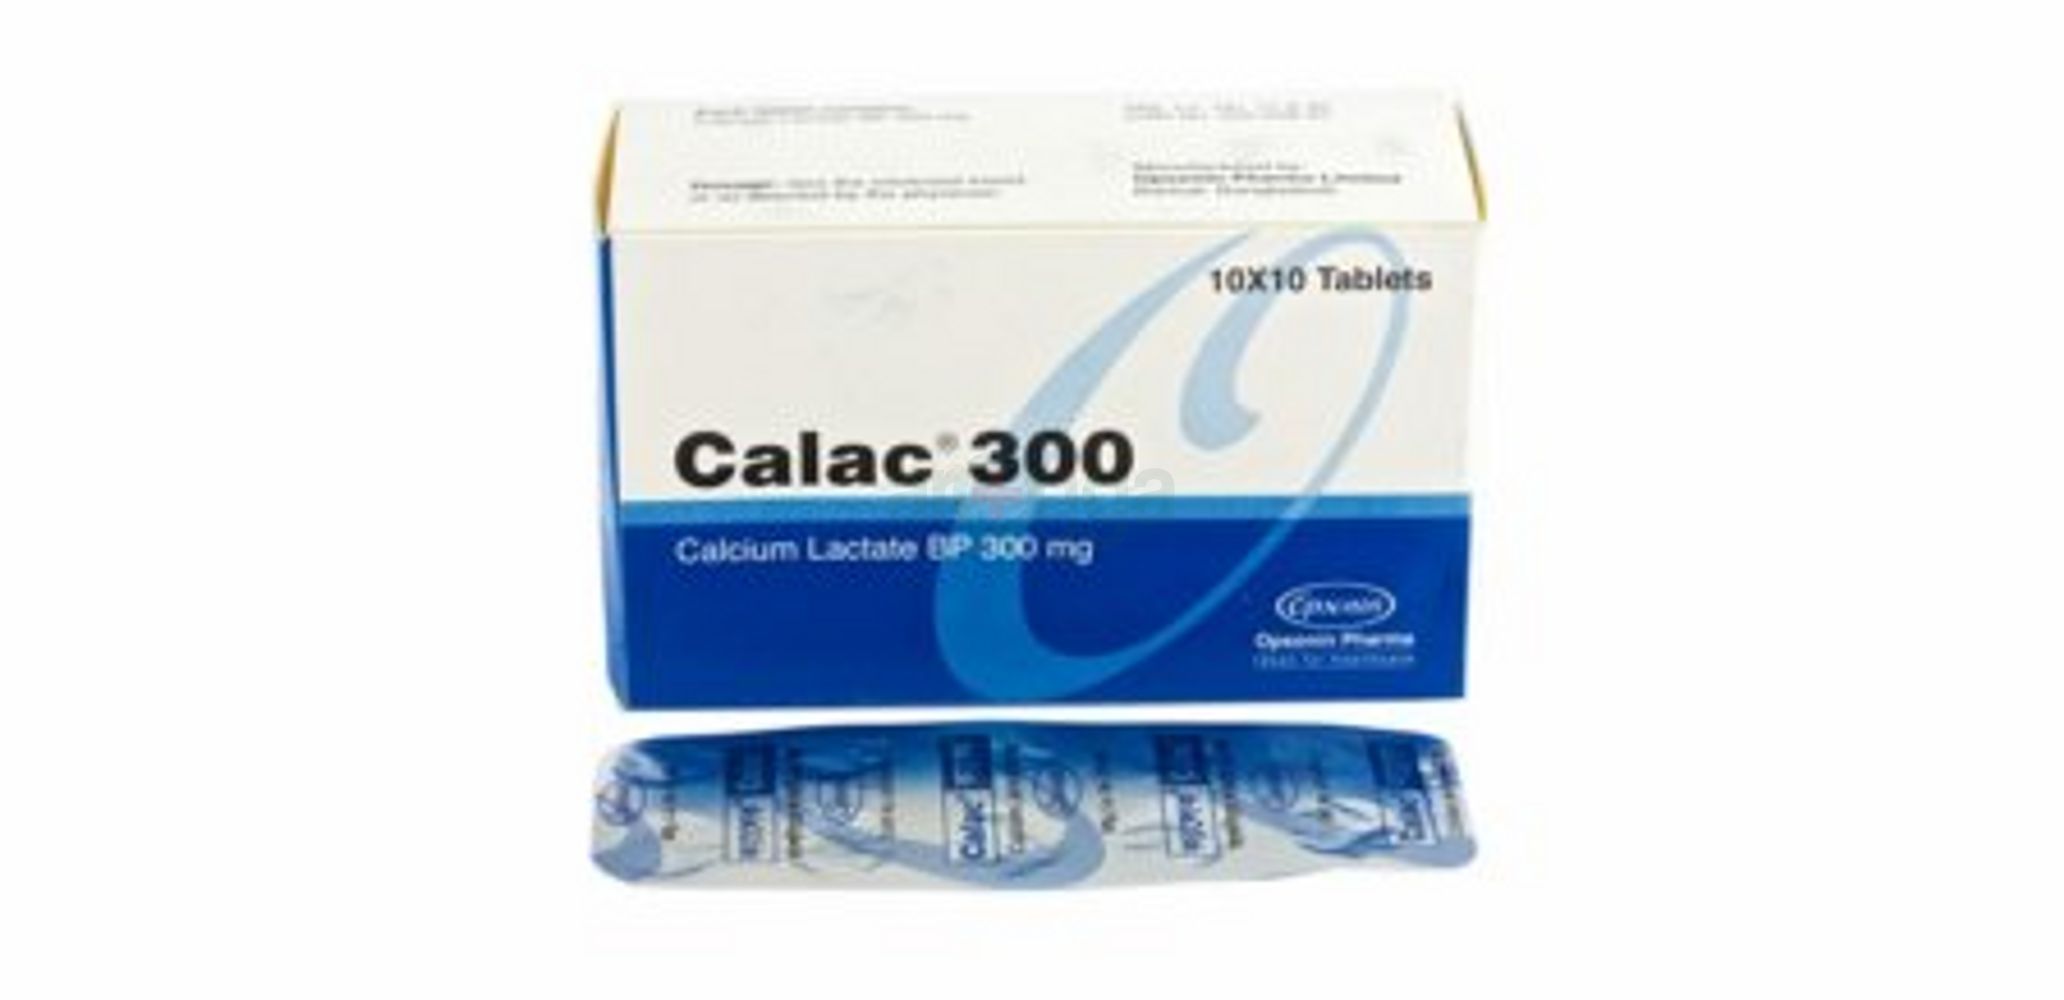 Calac 300